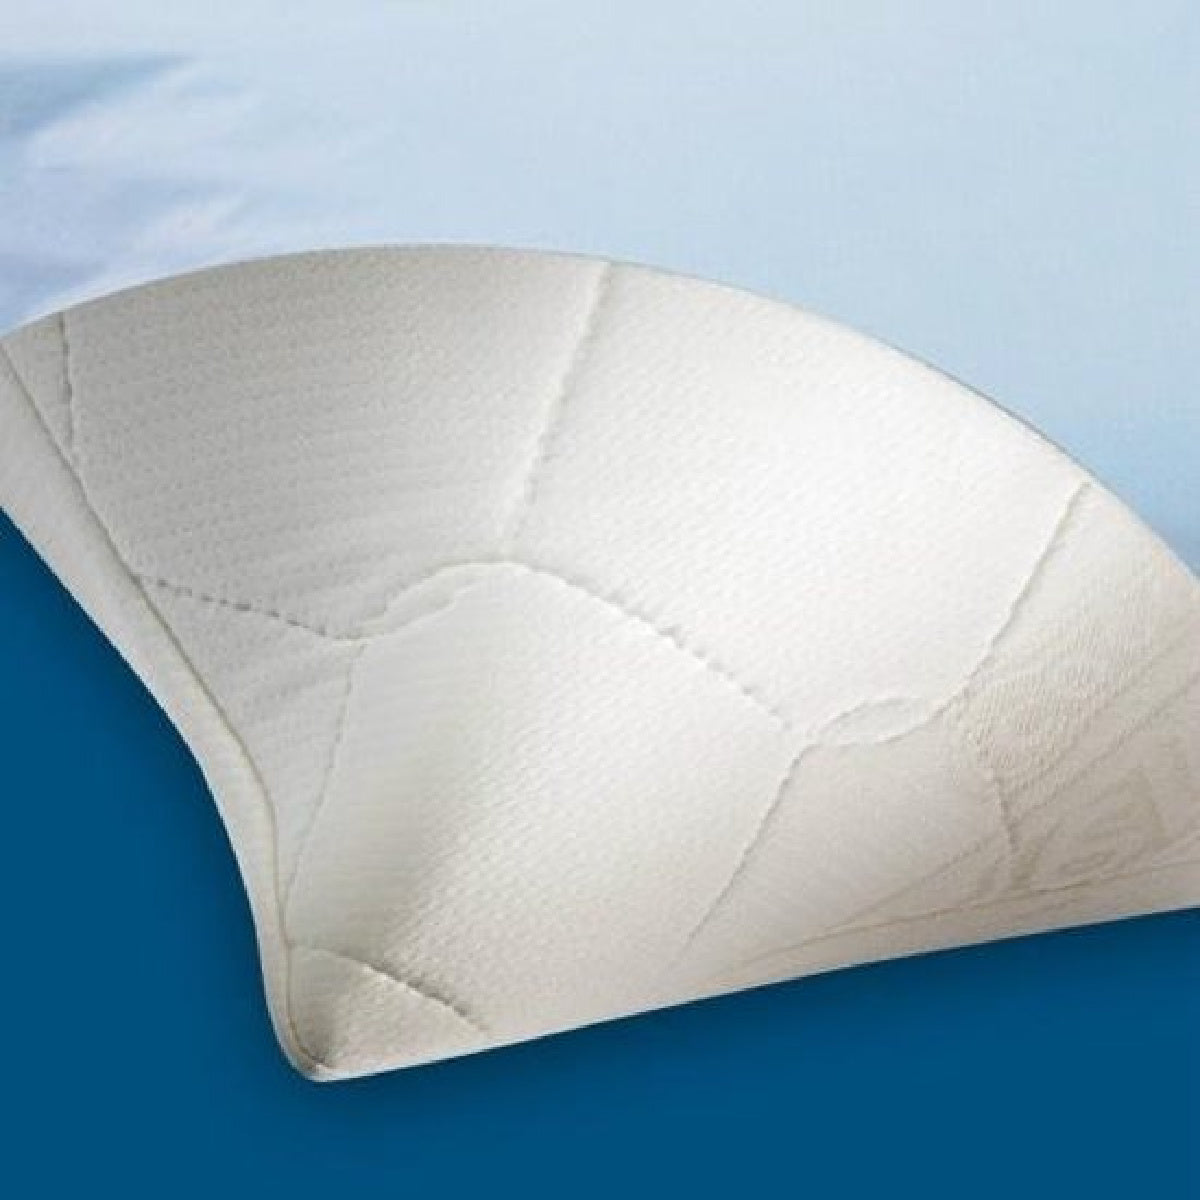 kussenbeschermer Aerosleep Coolmax-protège-oreiller Aerosleep Coolmax-pillow protector Aerosleep Coolmax